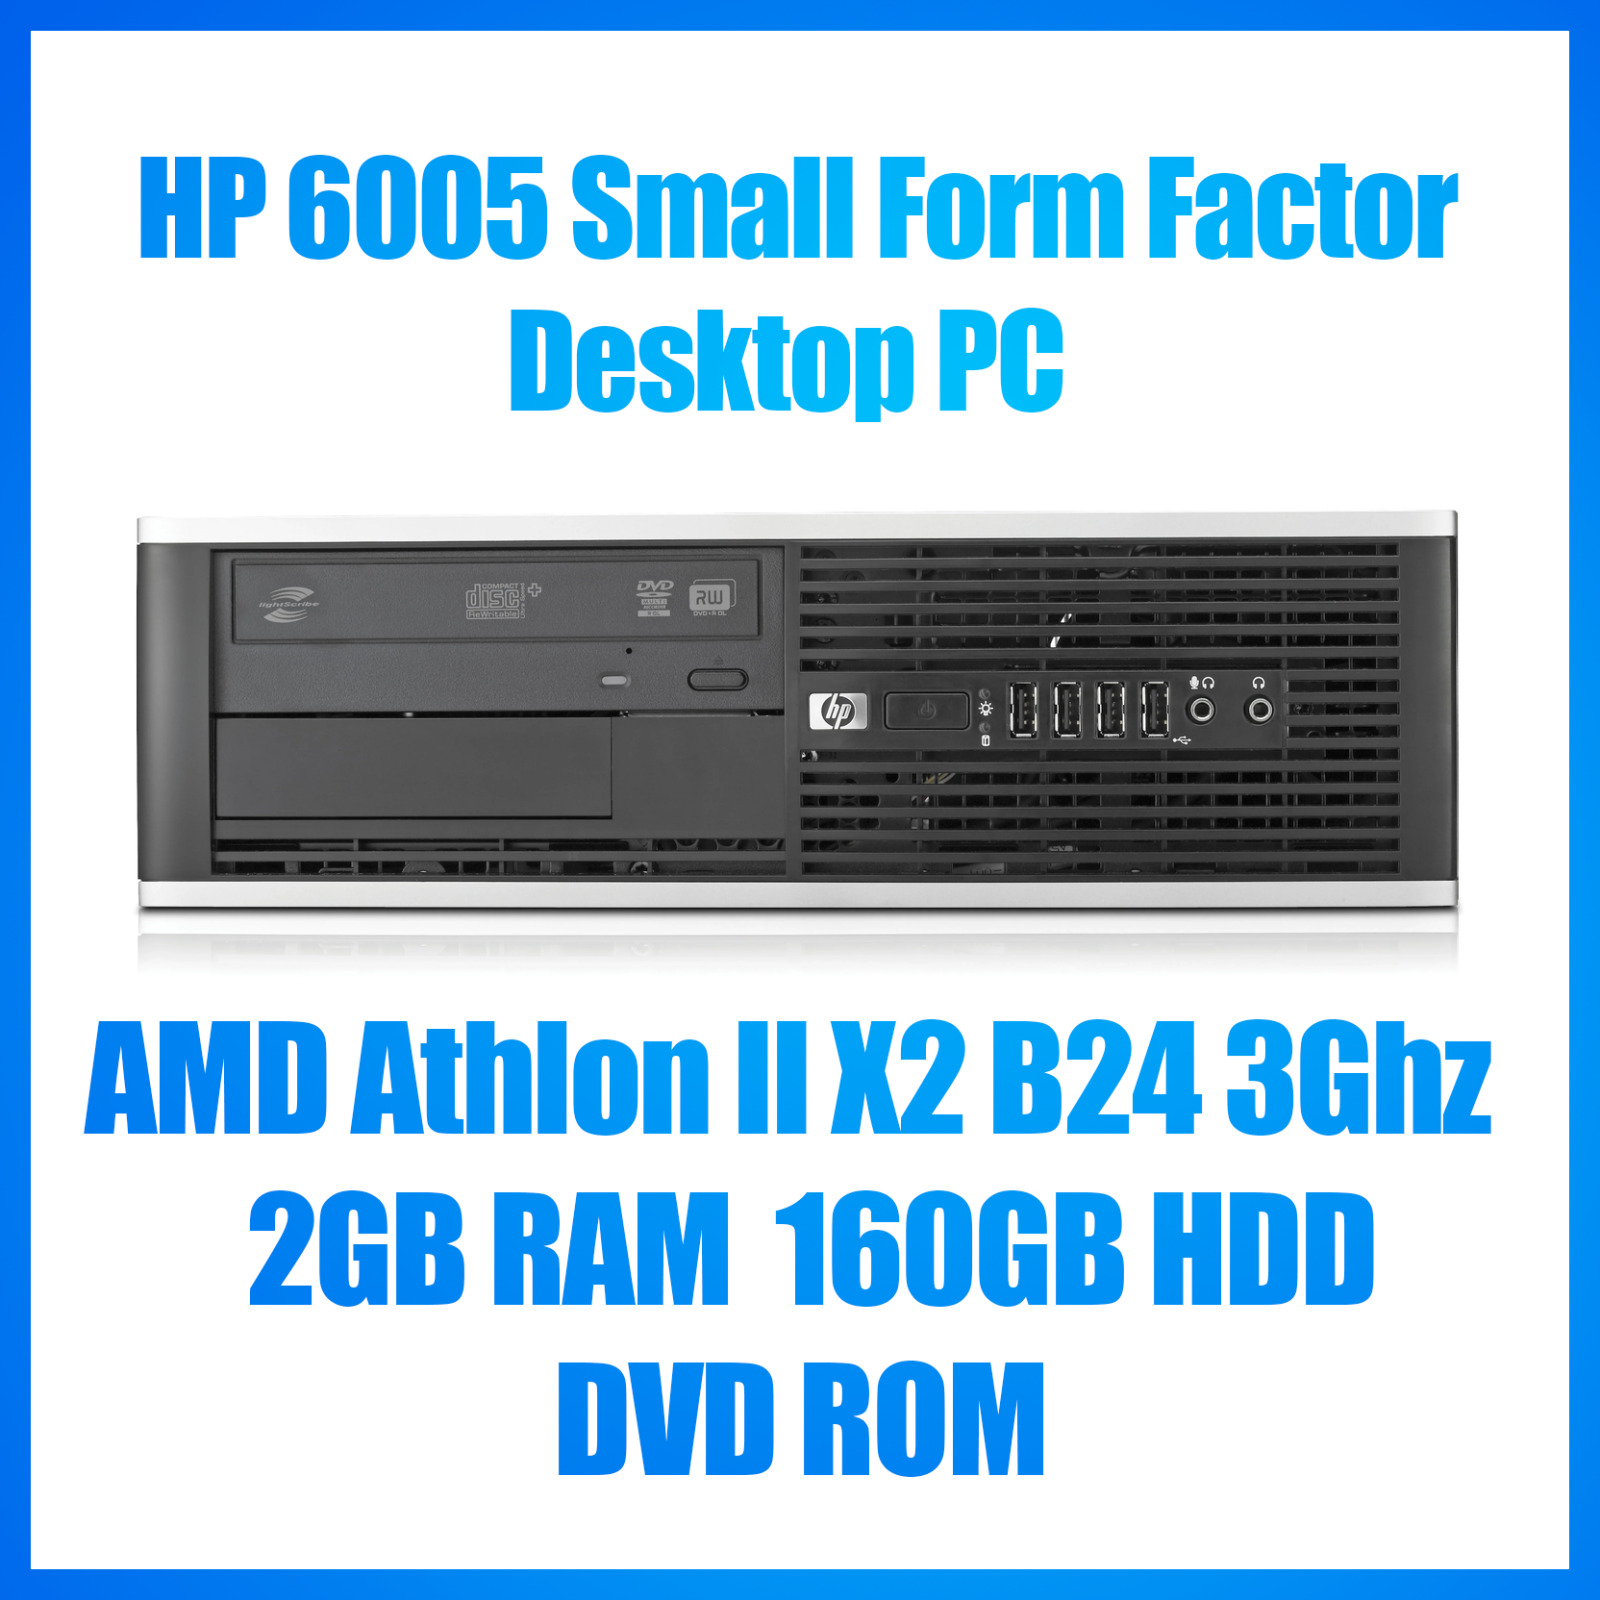 HP 6005 SFF Desktop PC - AMD Athlon II X2 B24 3Ghz - 2GB RAM - 160GB HDD- DVD